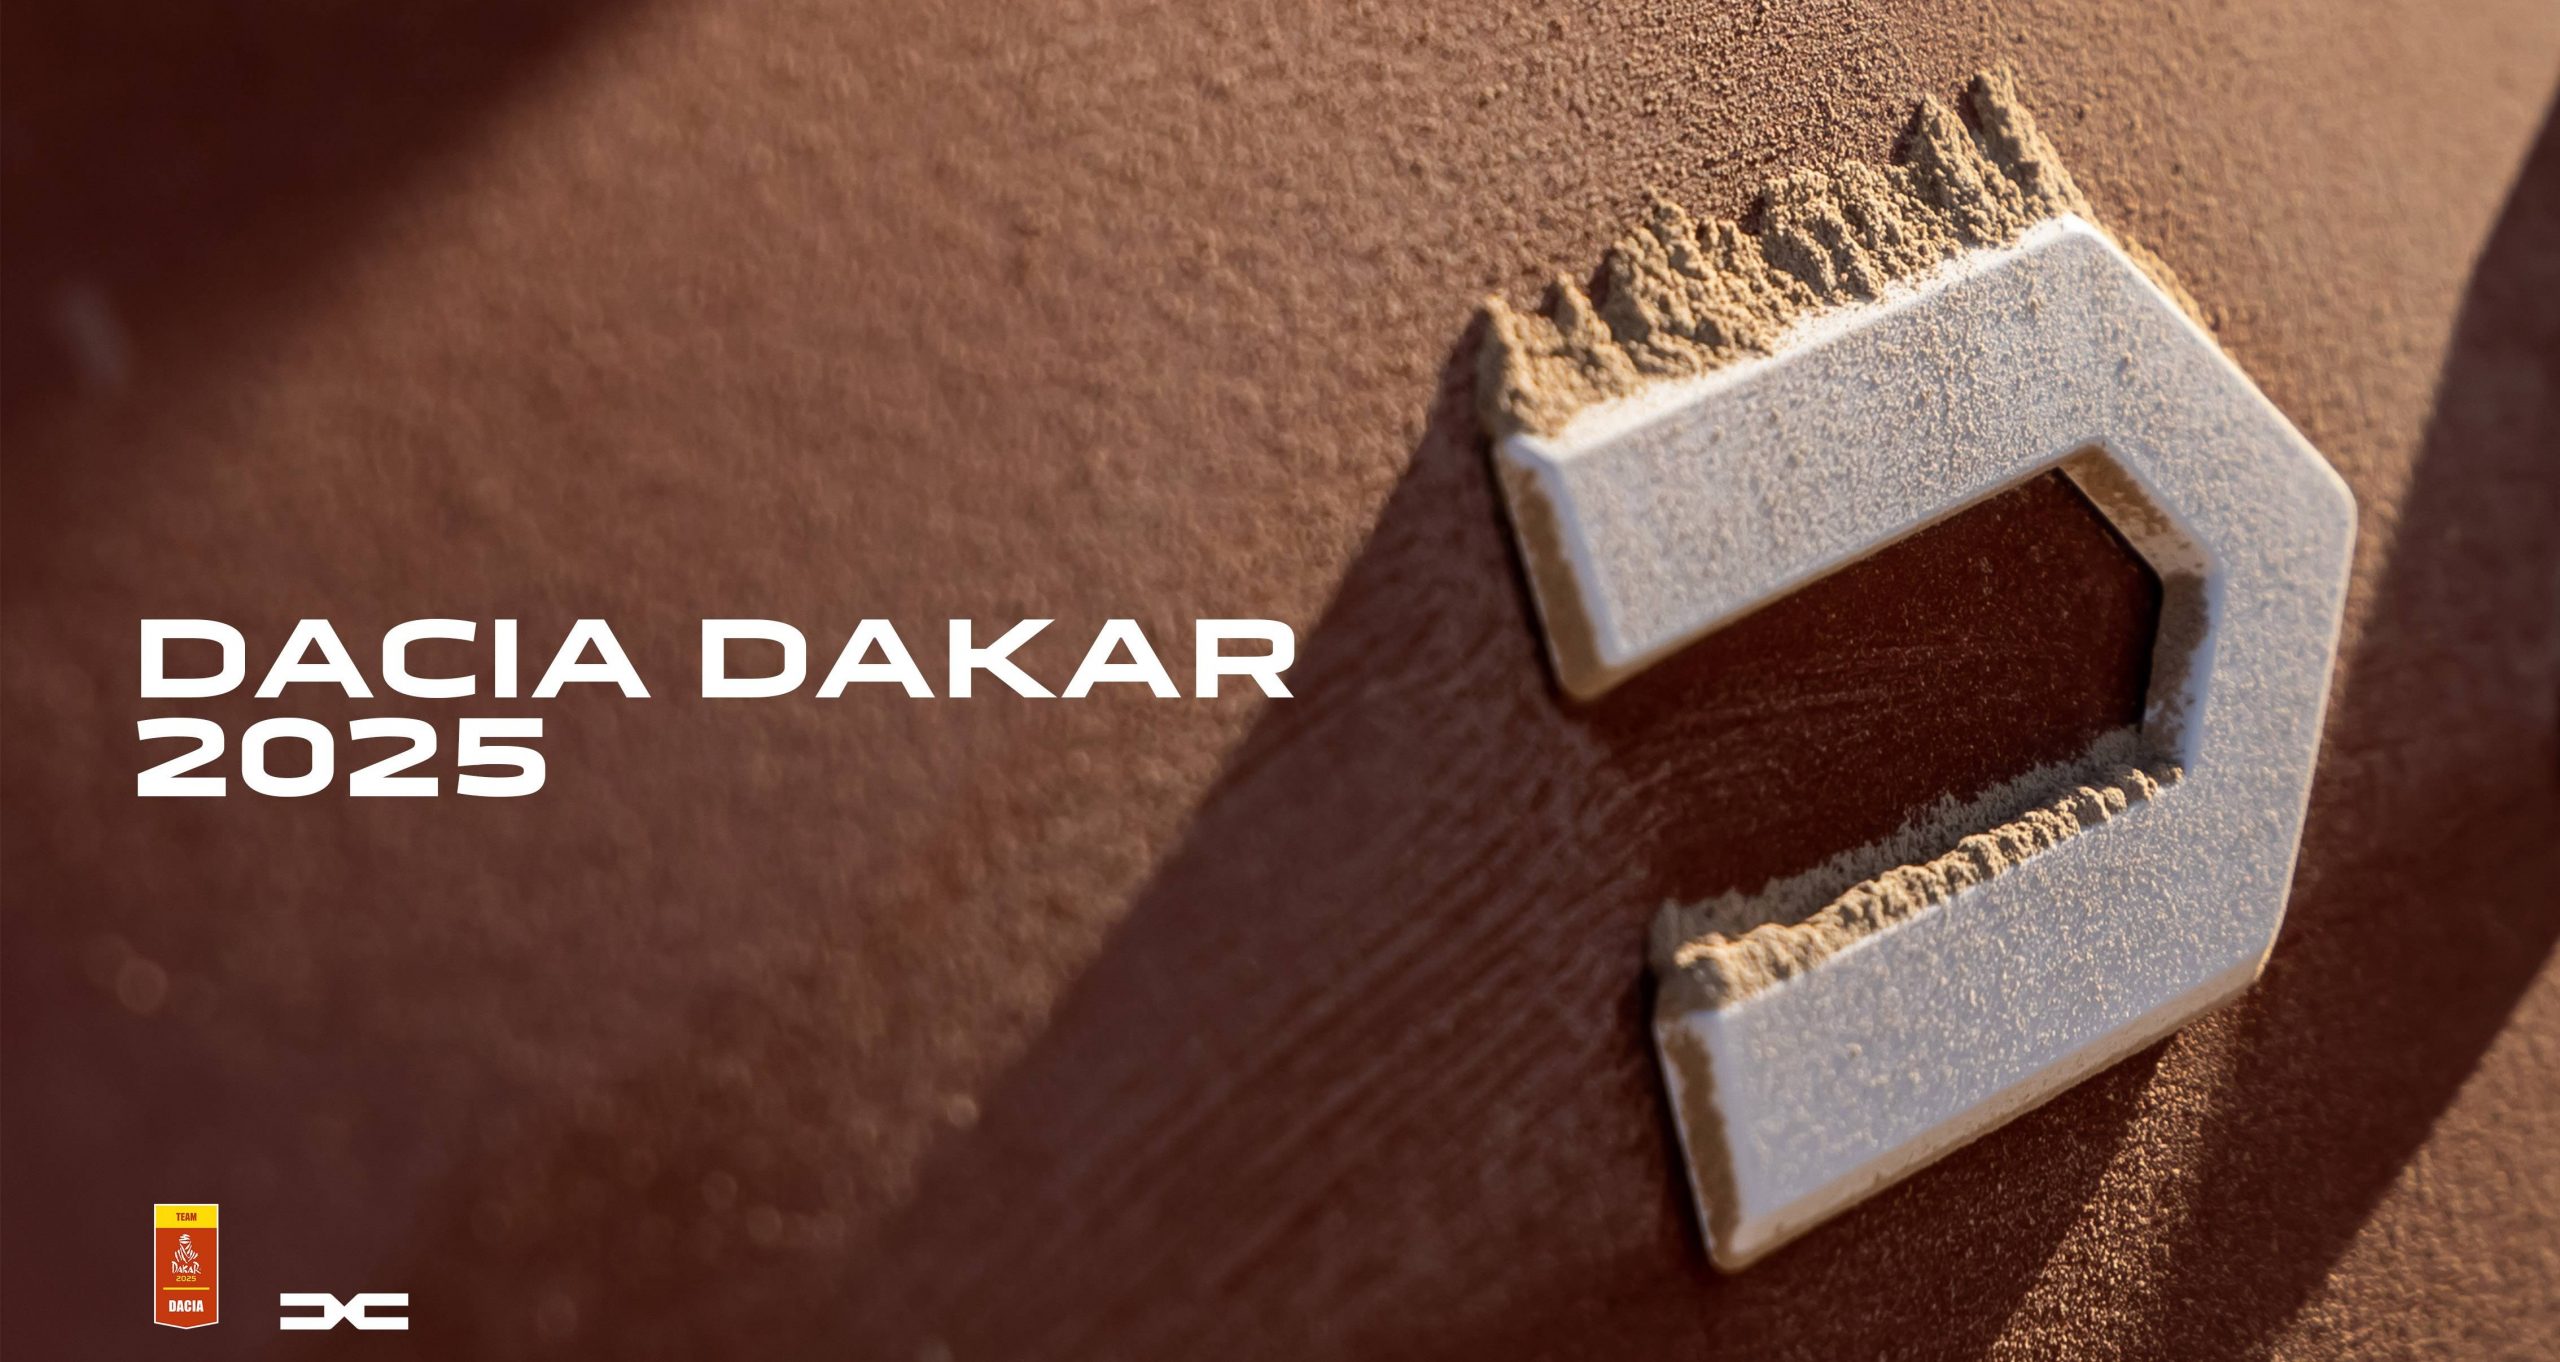 Dacia w Rajdzie Dakar - logo